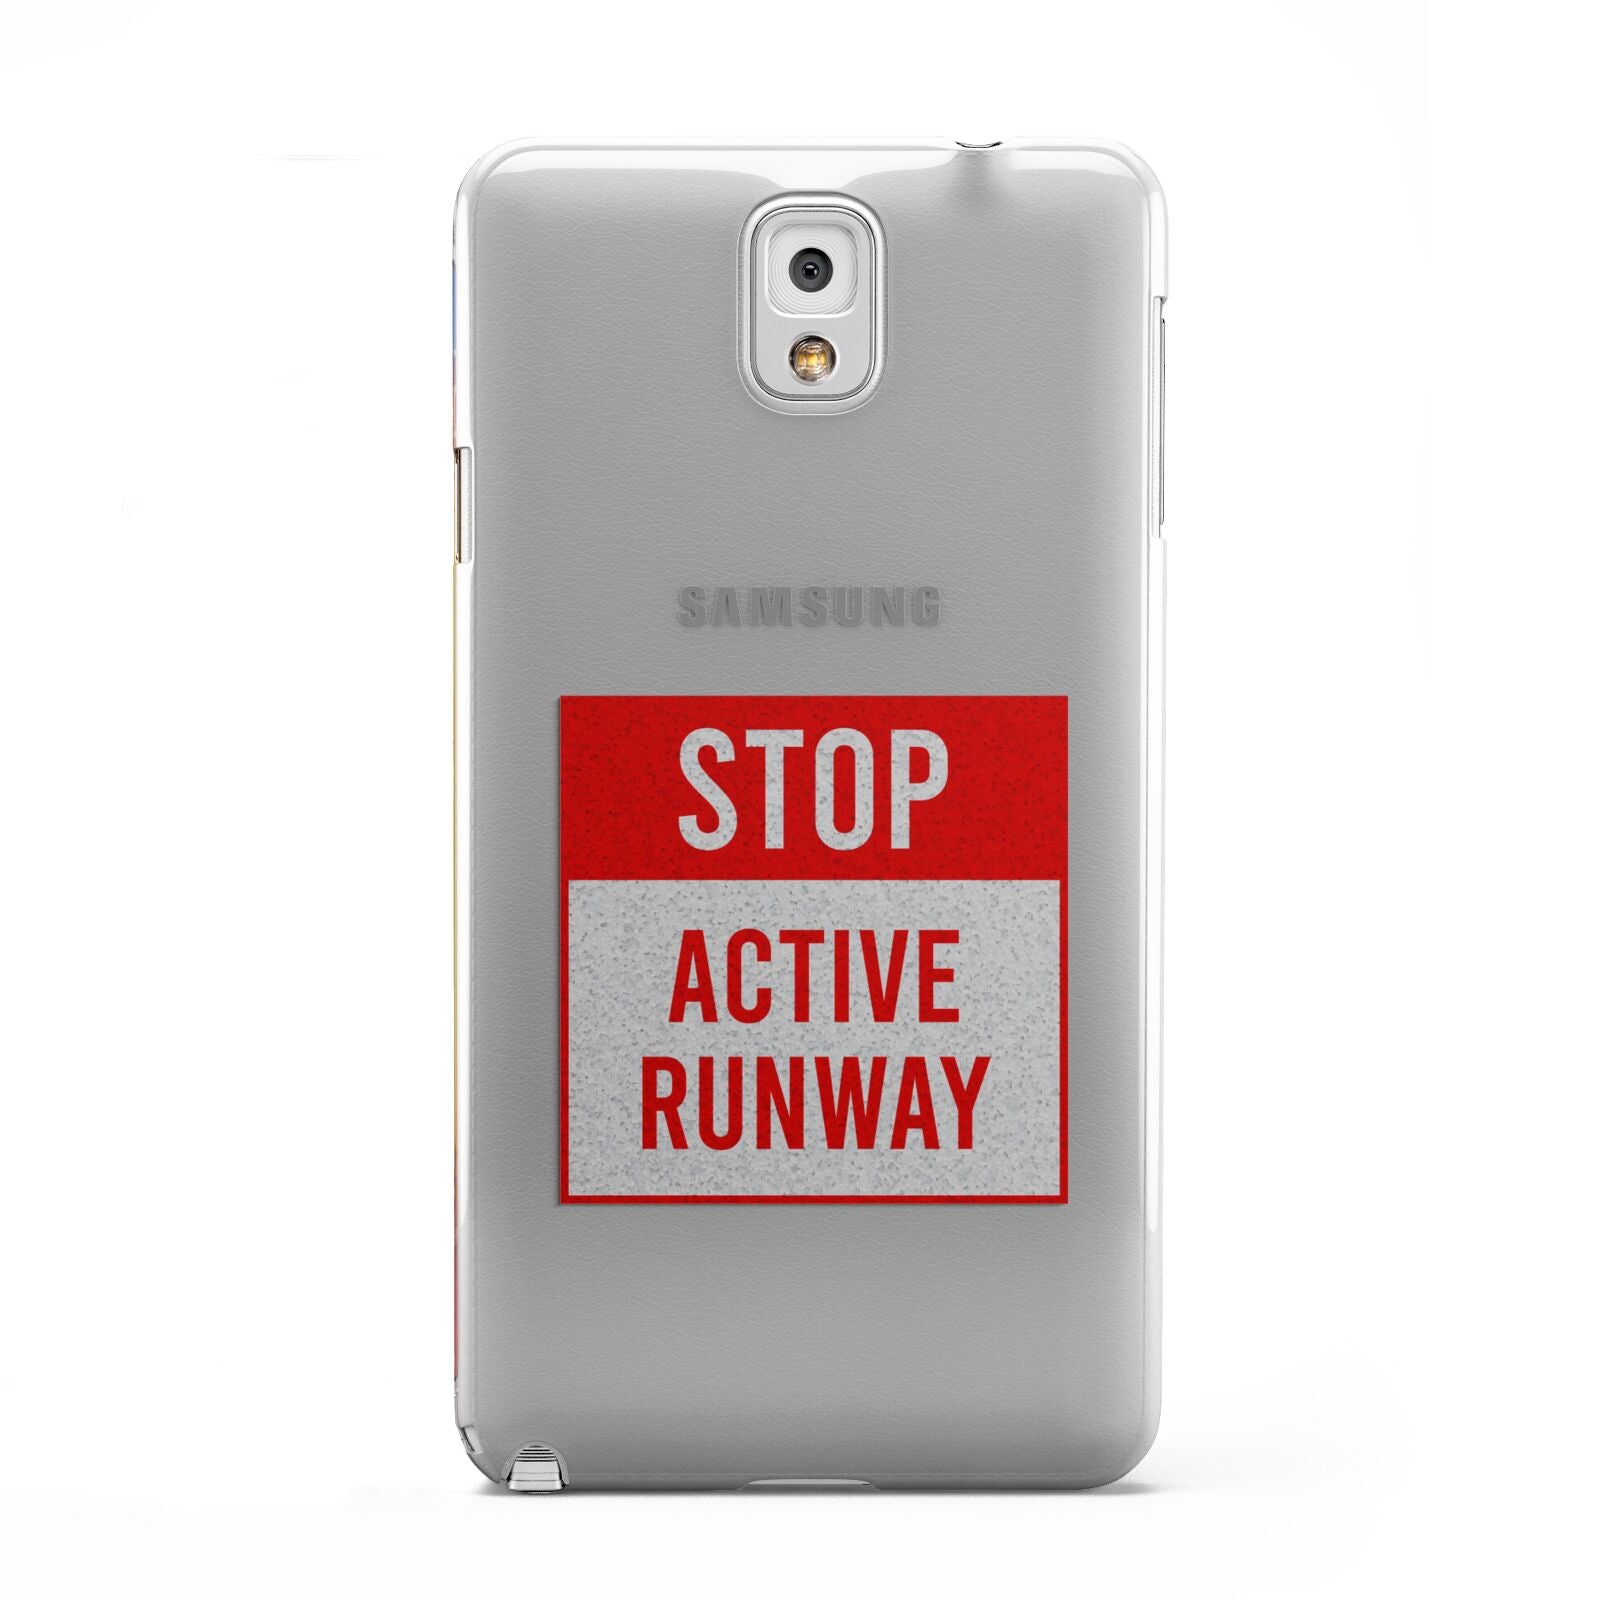 Stop Active Runway Samsung Galaxy Note 3 Case